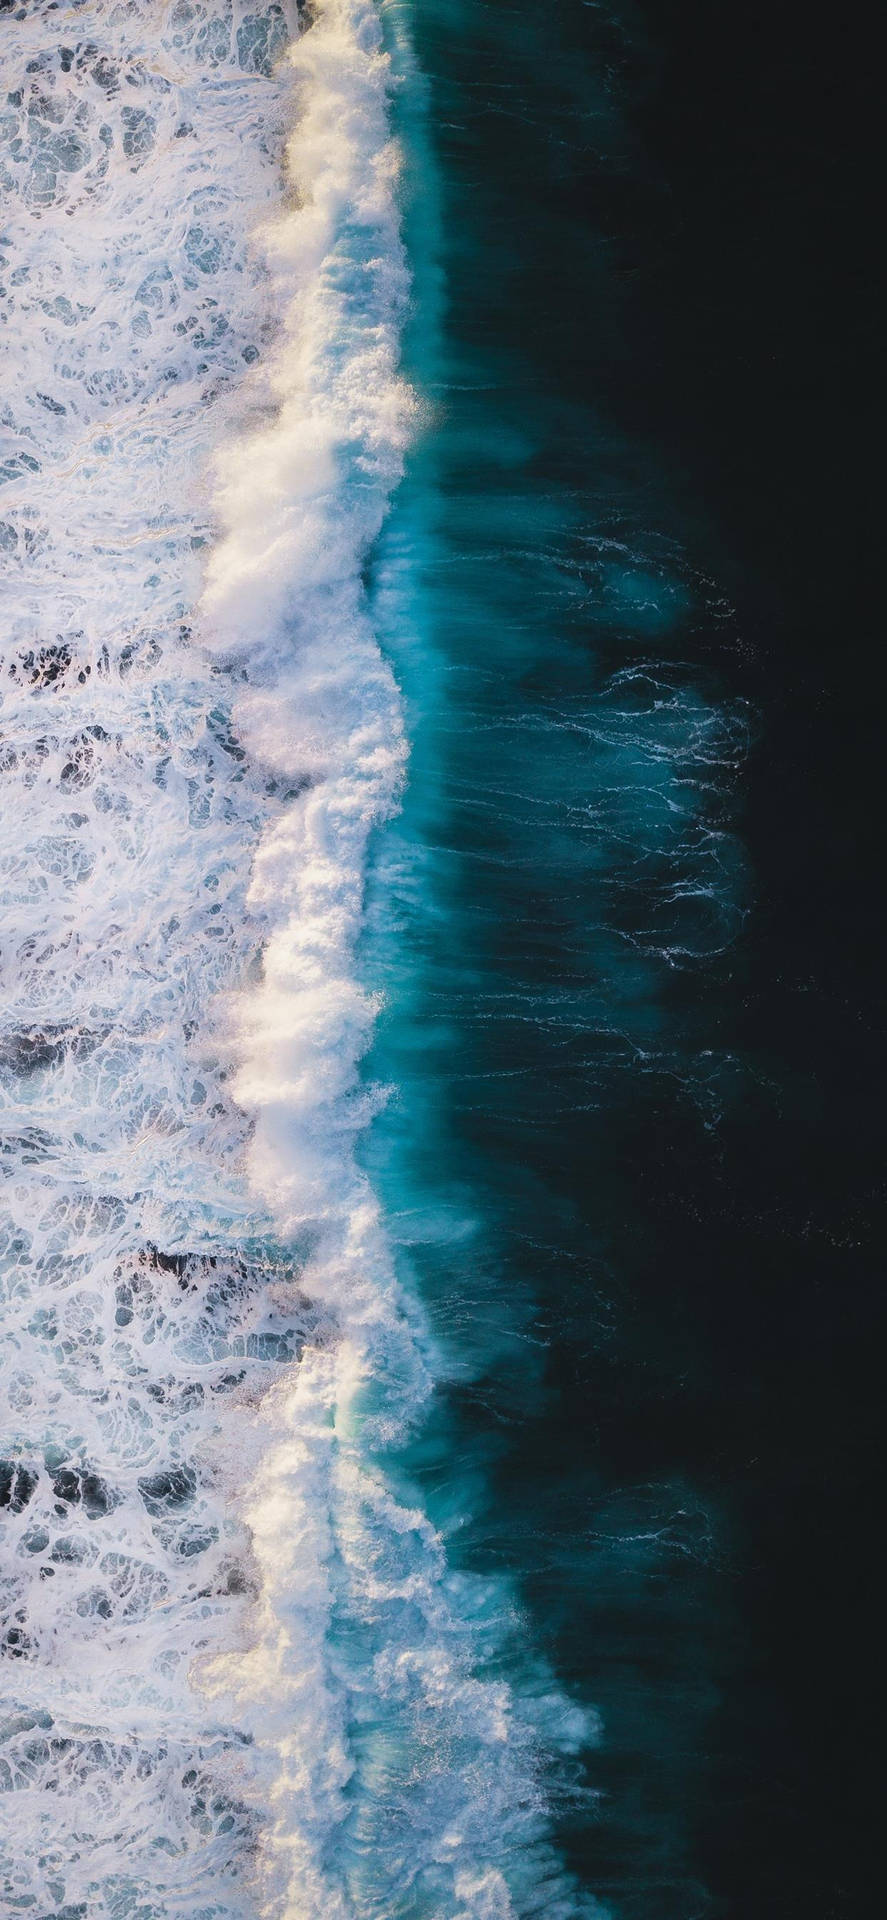 iPhone XS Ocean Seafoam: Tapetet åbner op for et hav af smaragduldne farver. Wallpaper